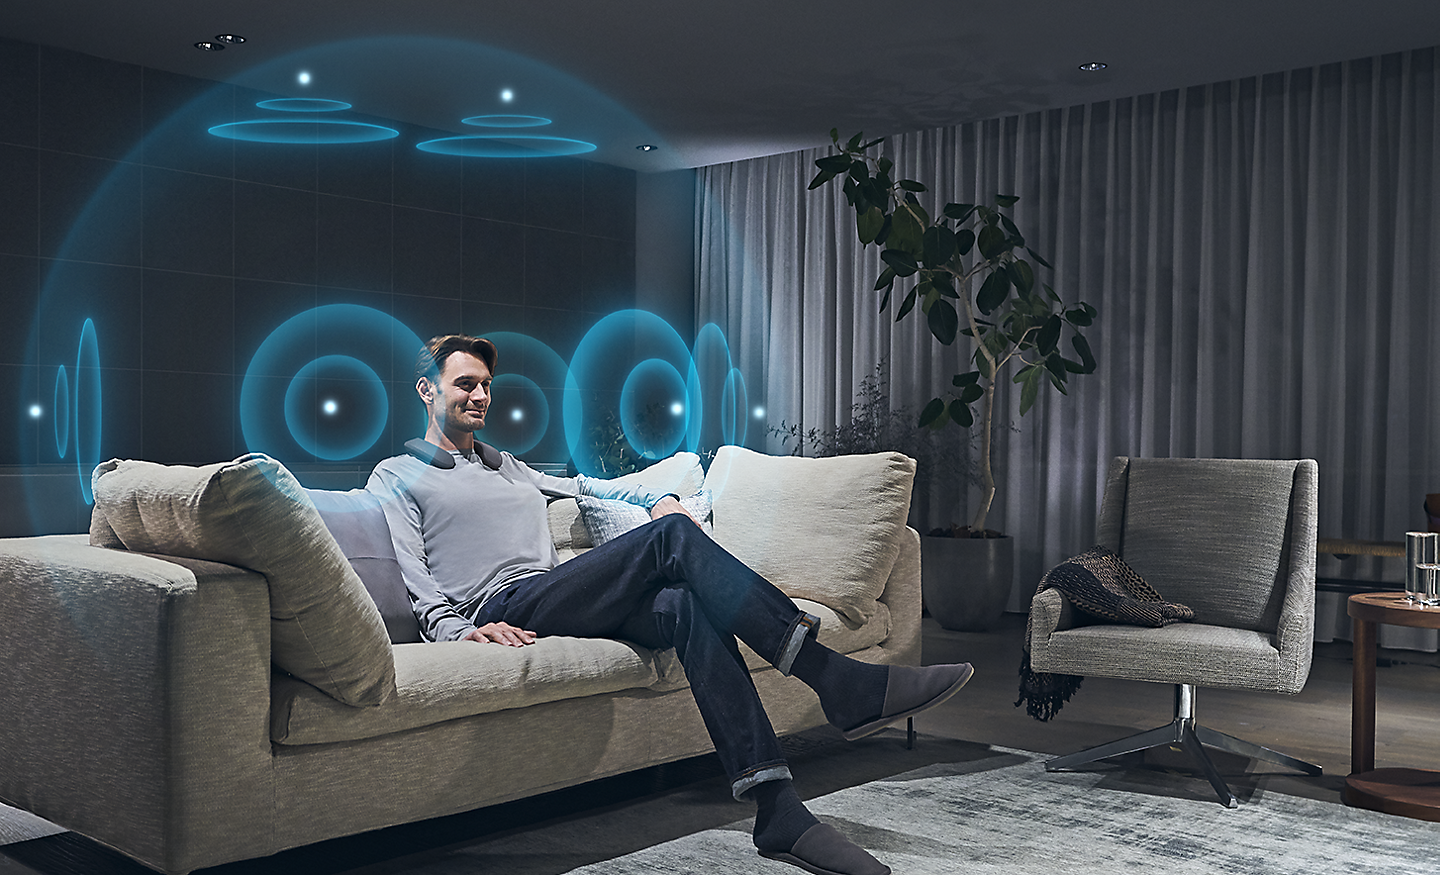 Imagen de un hombre en la sala de estar con ondas sonoras azules ilustradas que representan 360 Spatial Sound